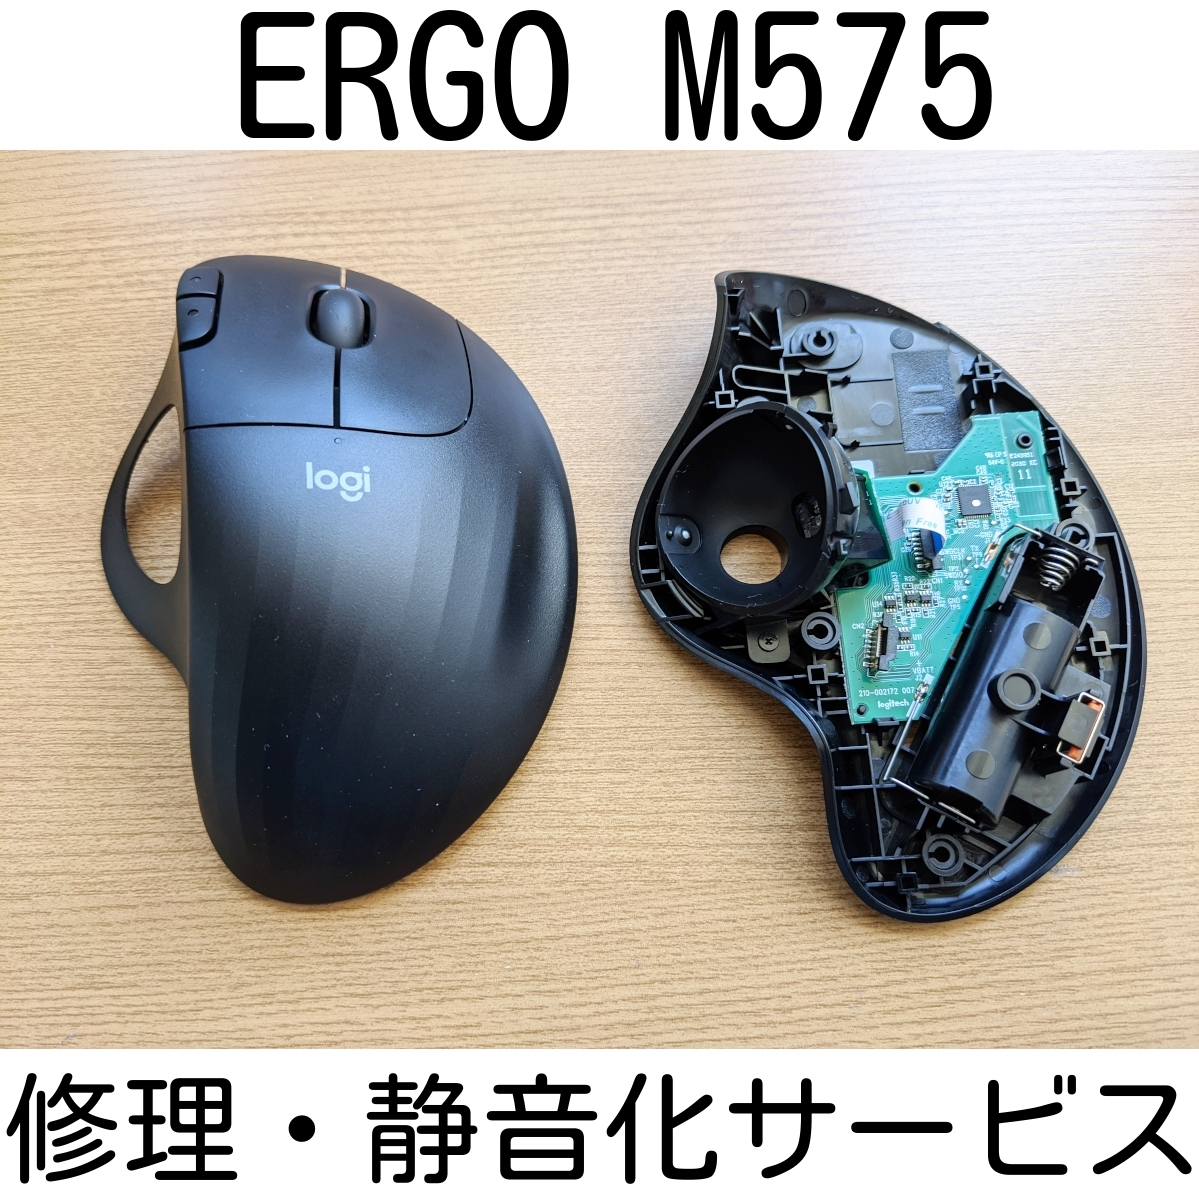 保証付き Logicool ERGO M575 修理 静音化 サービス スイッチ交換 修理 代行 ロジクール リペア マウス Logitech トラックボール_画像1